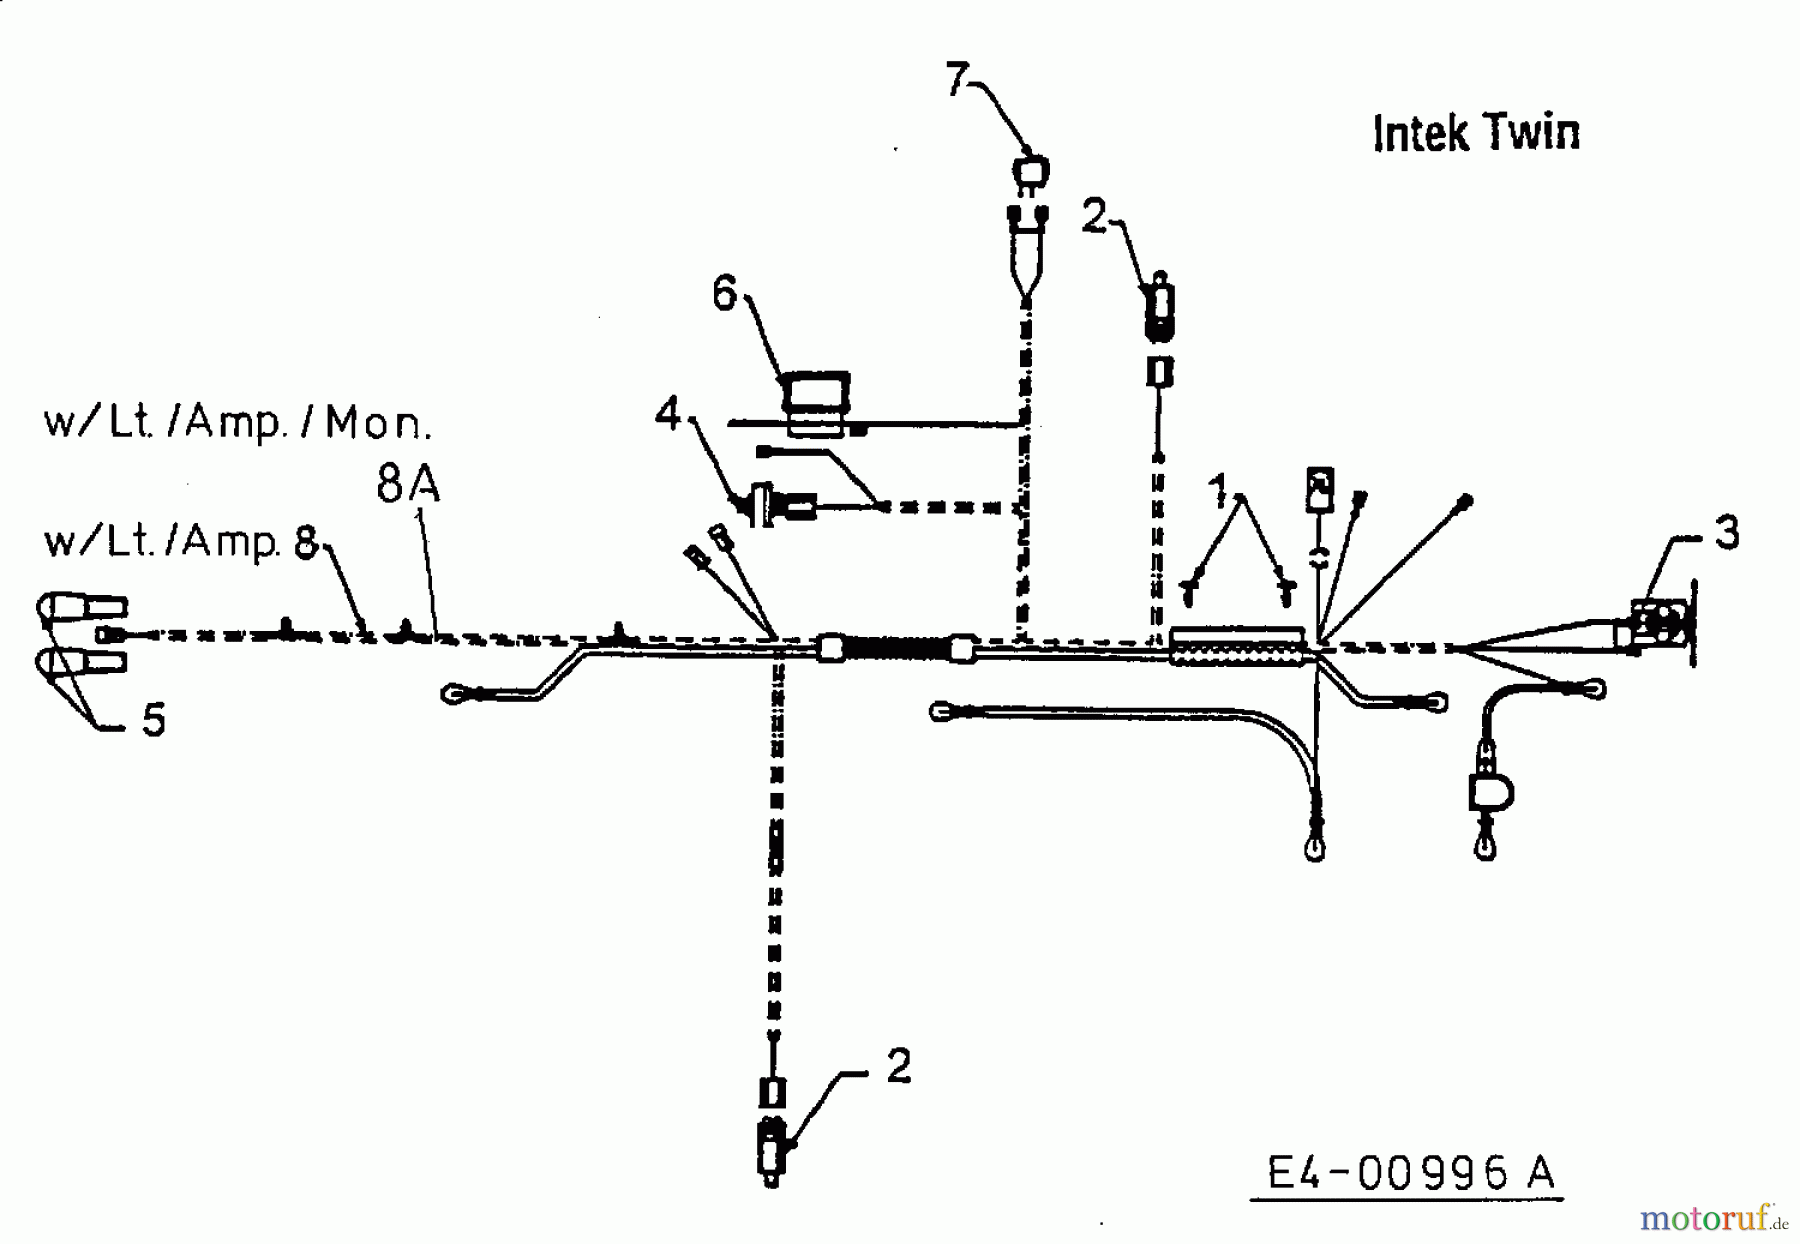  MTD Tracteurs de pelouse H/165 13AO698G678  (2000) Plan électrique  Intek Twin